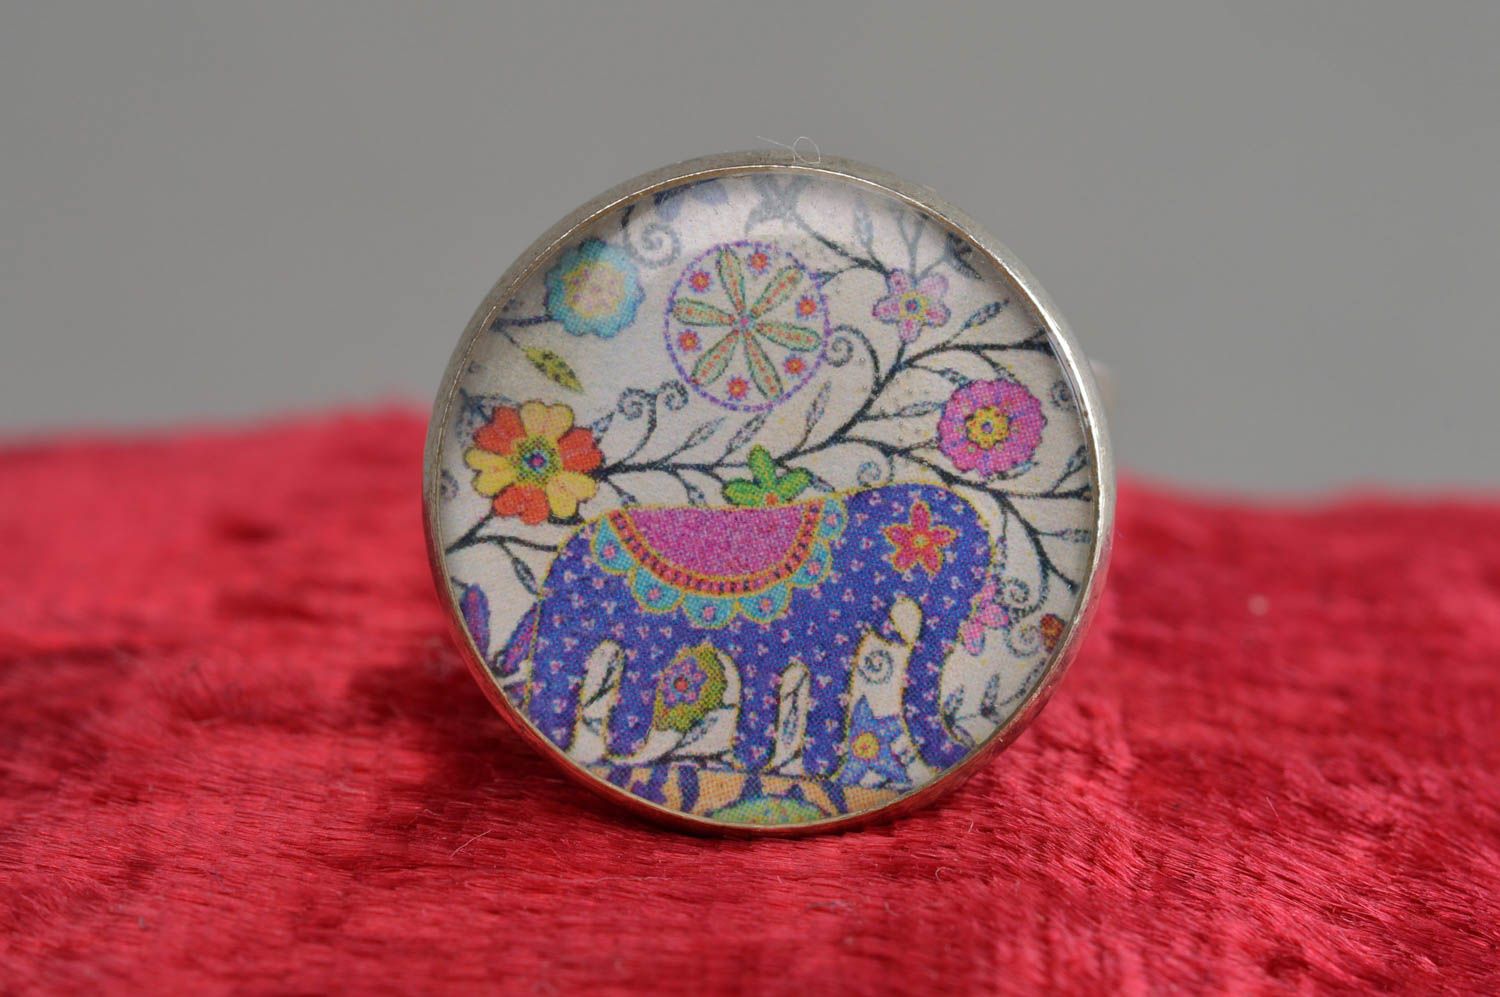 Handmade exklusiver Ring Vintage mit Blume im Epoxidharz für elegante Looks foto 2